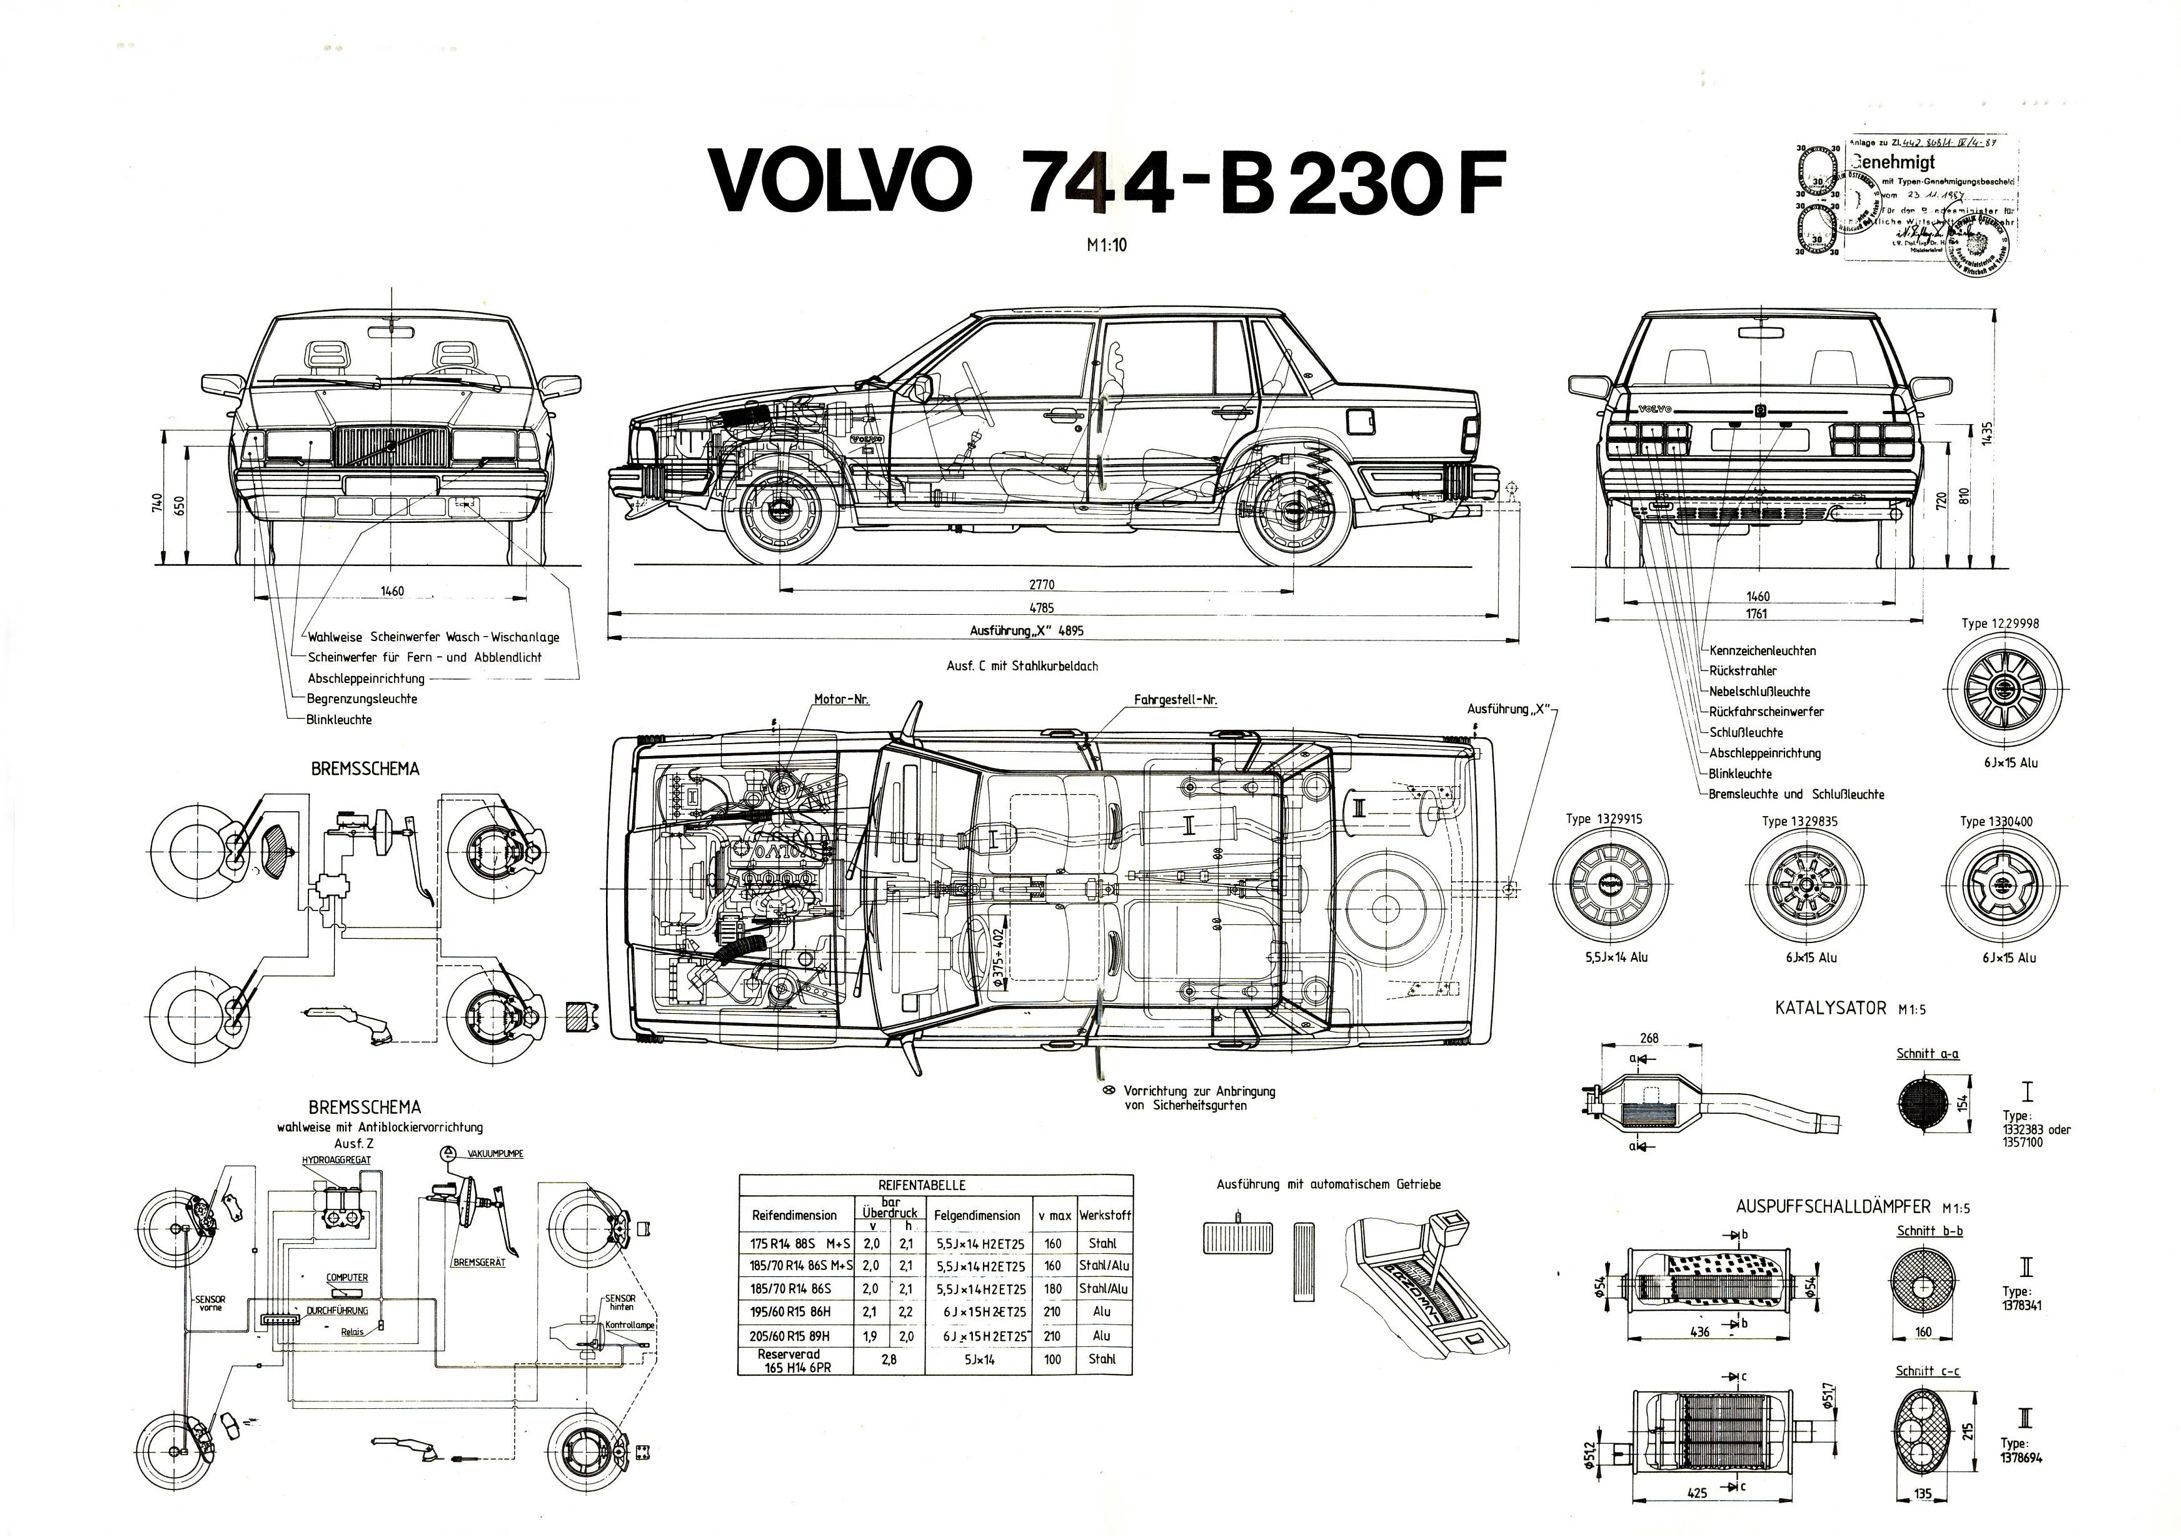 File:Volvo 744- B230F.jpg